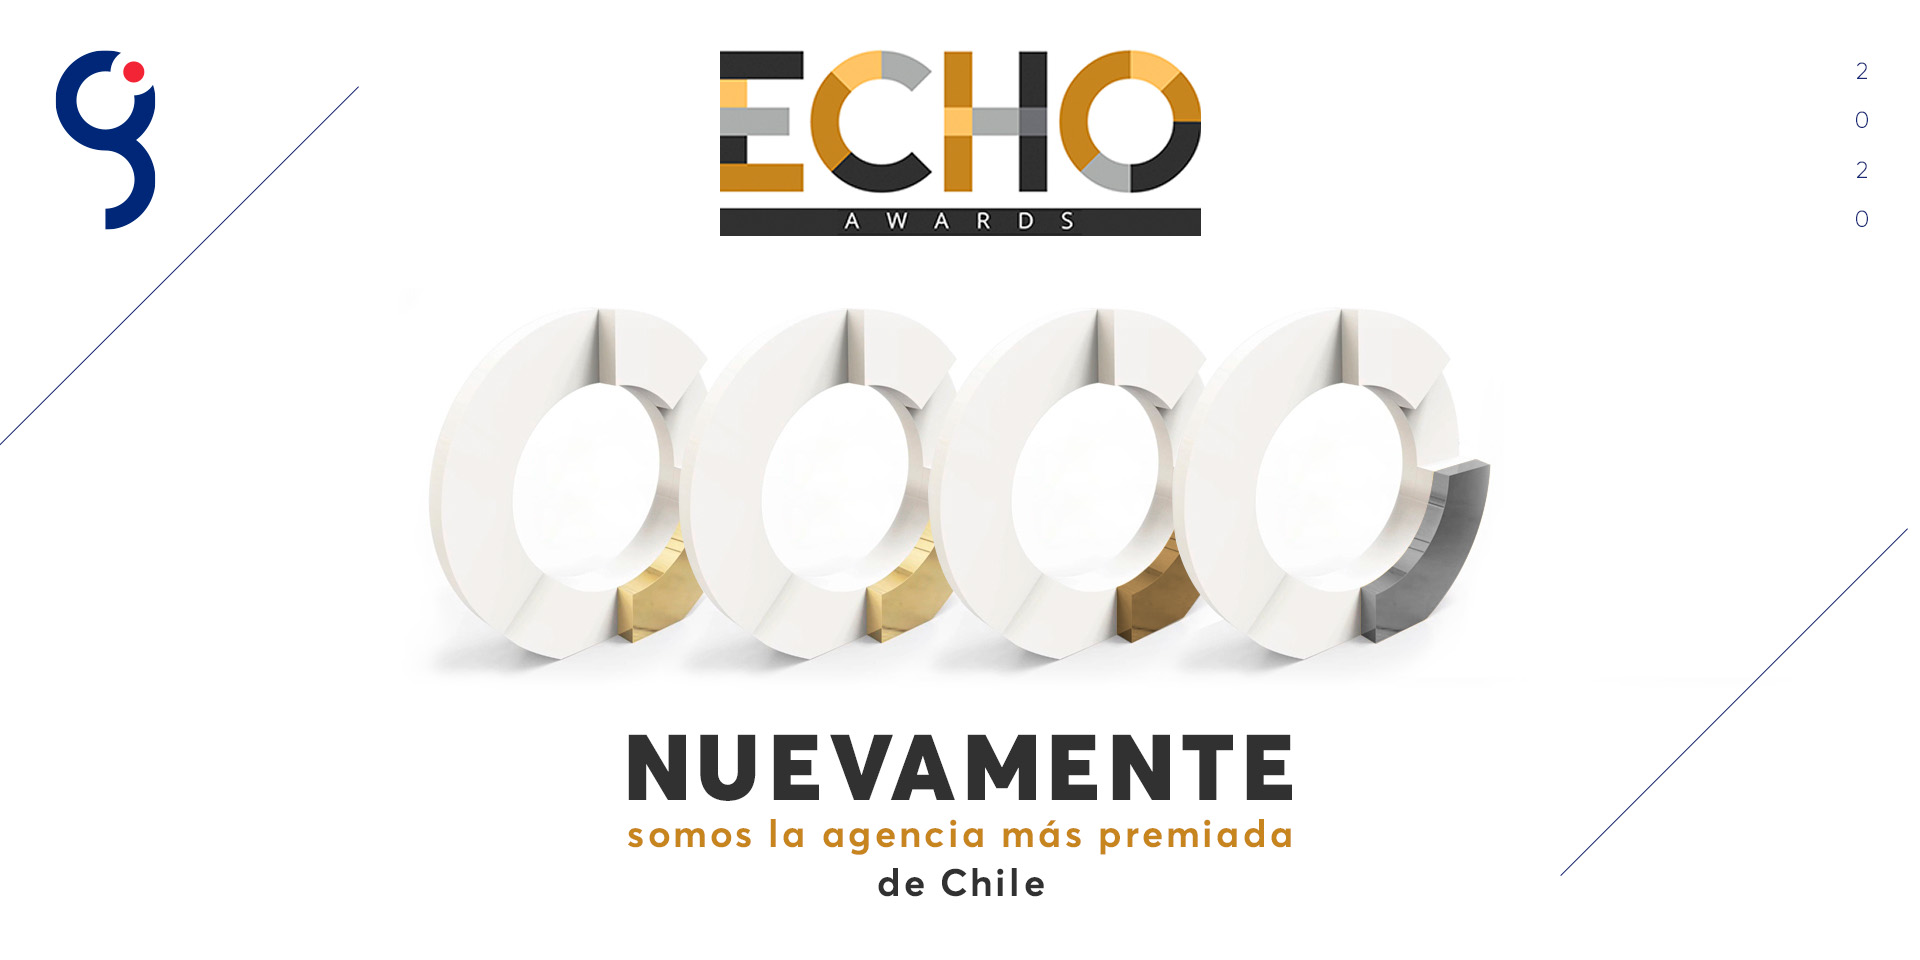 Global, la agencia más premiada de Chile por quinto año consecutivo en los Echo Awards Latam 2020